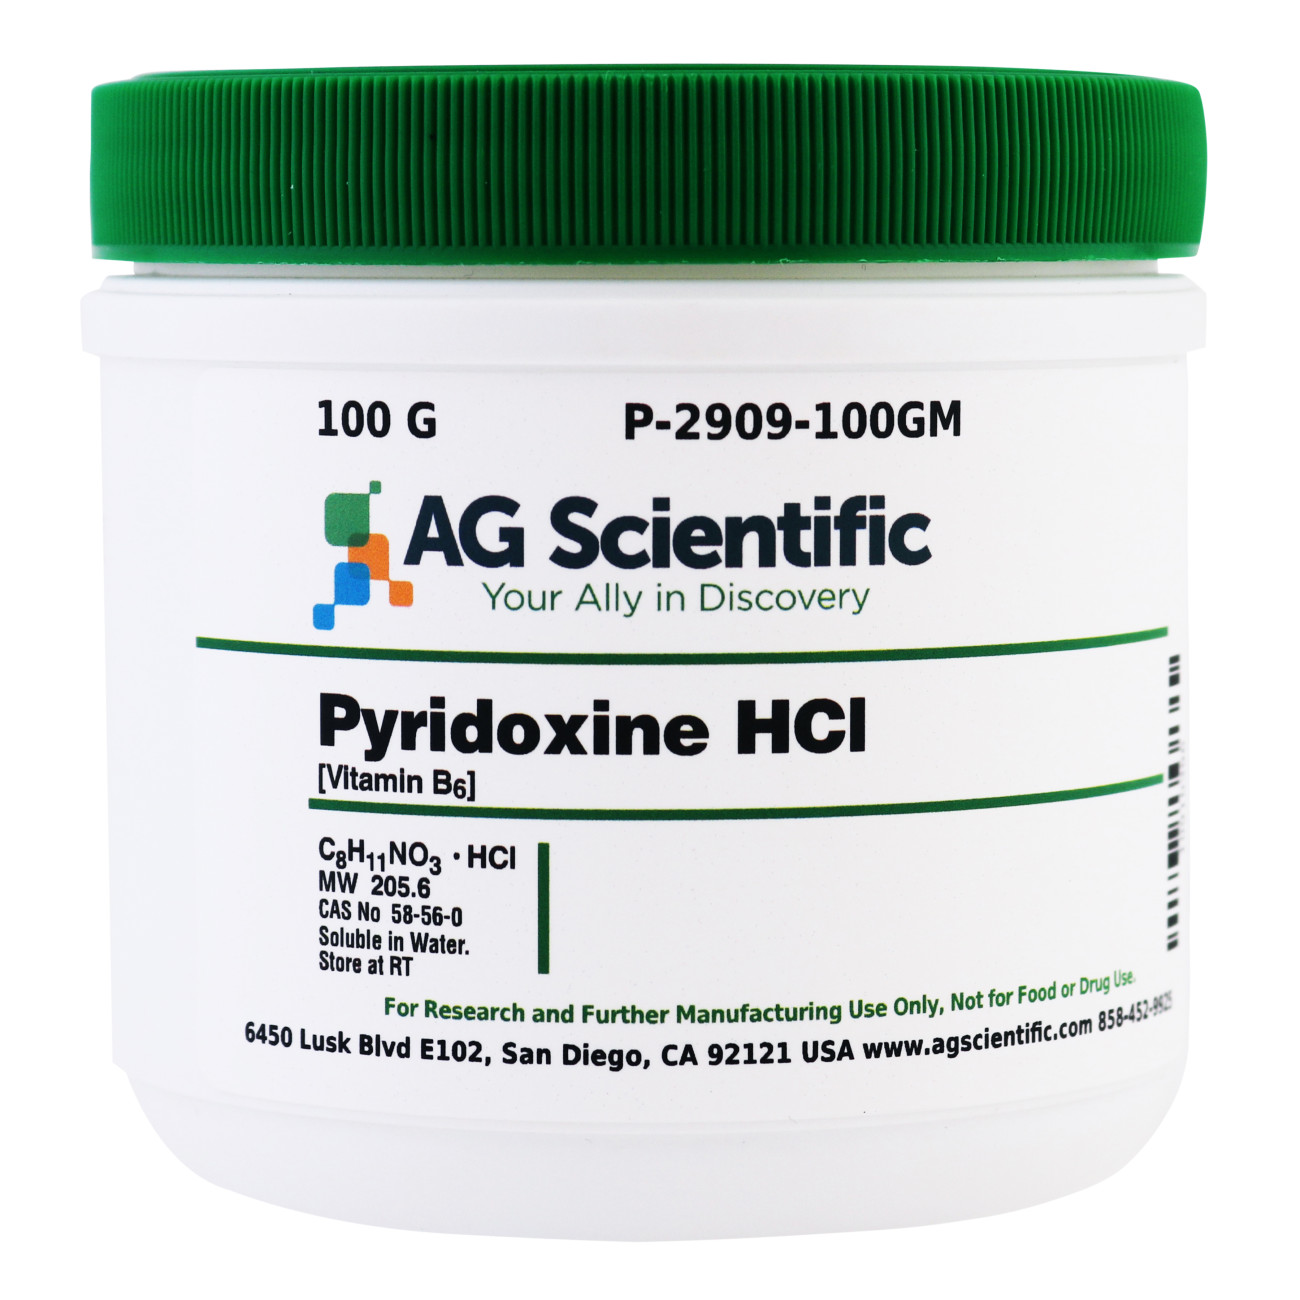 Pyridoxine Hydrochloride [Vitamin B6], 100 G